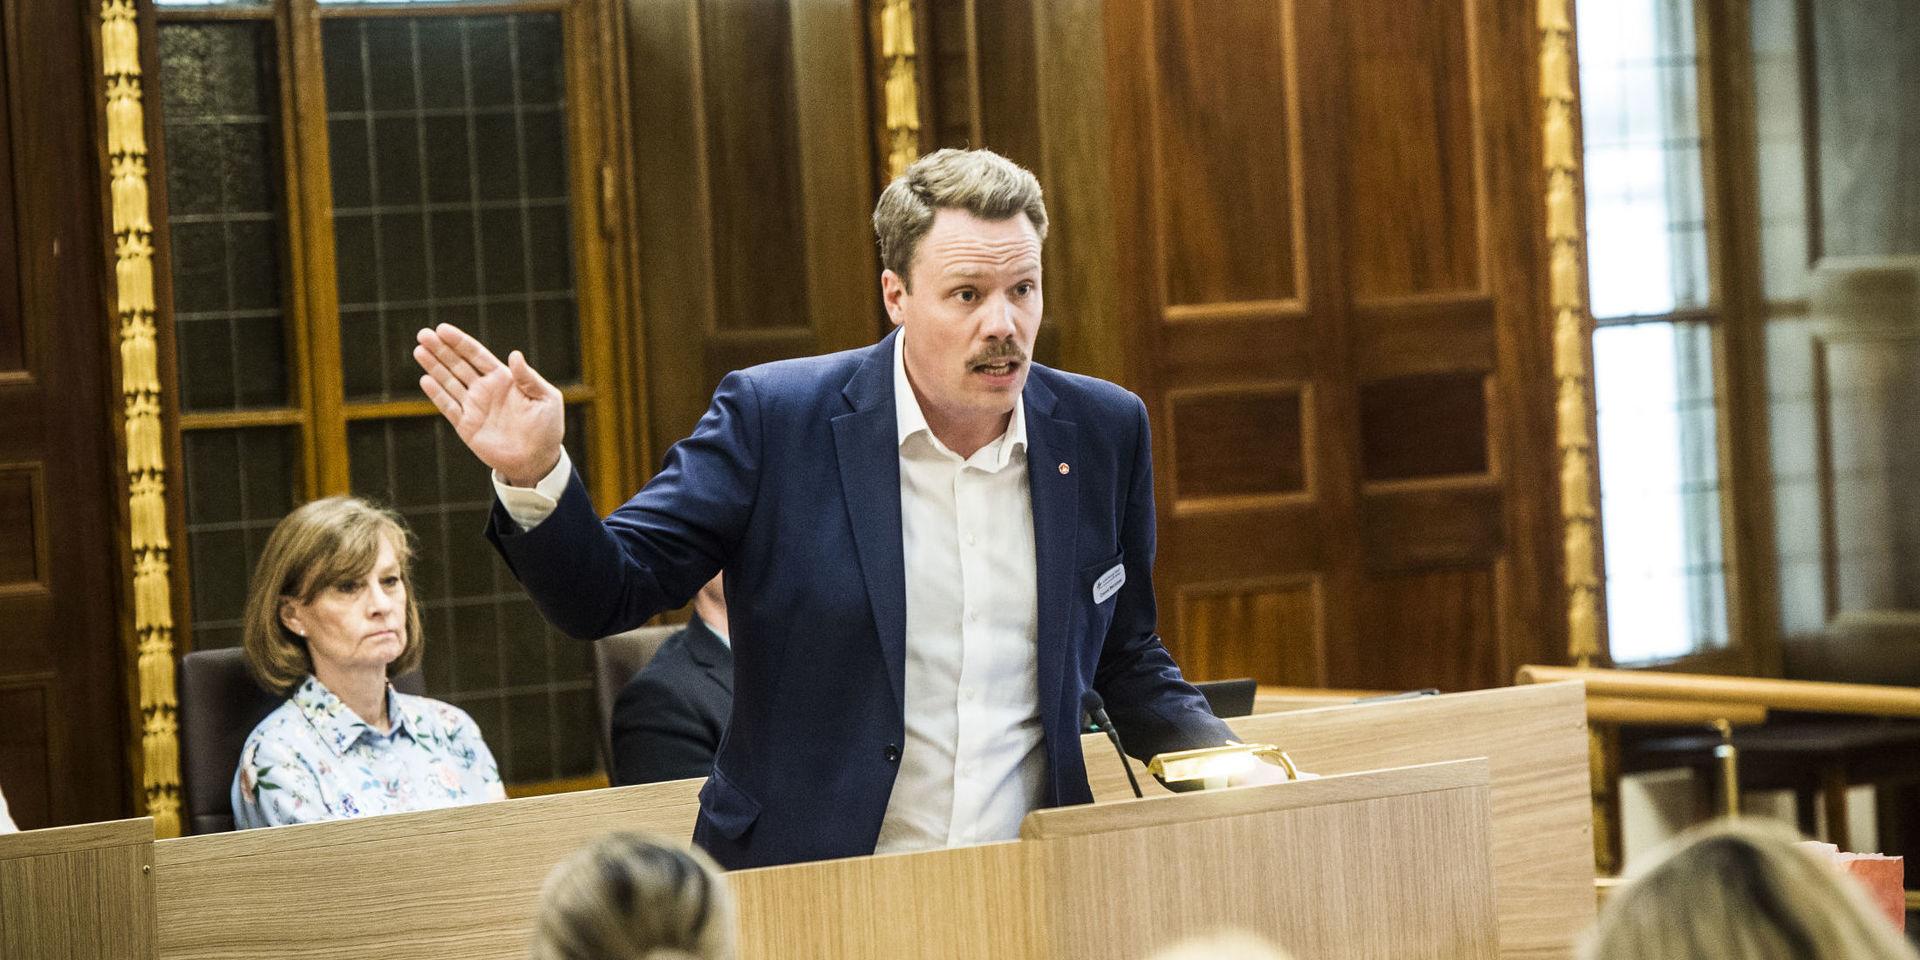 Vänsterpartiets toppnamn i Göteborg, Daniel Bernmar, vill nu se en kvinna som partiledare.